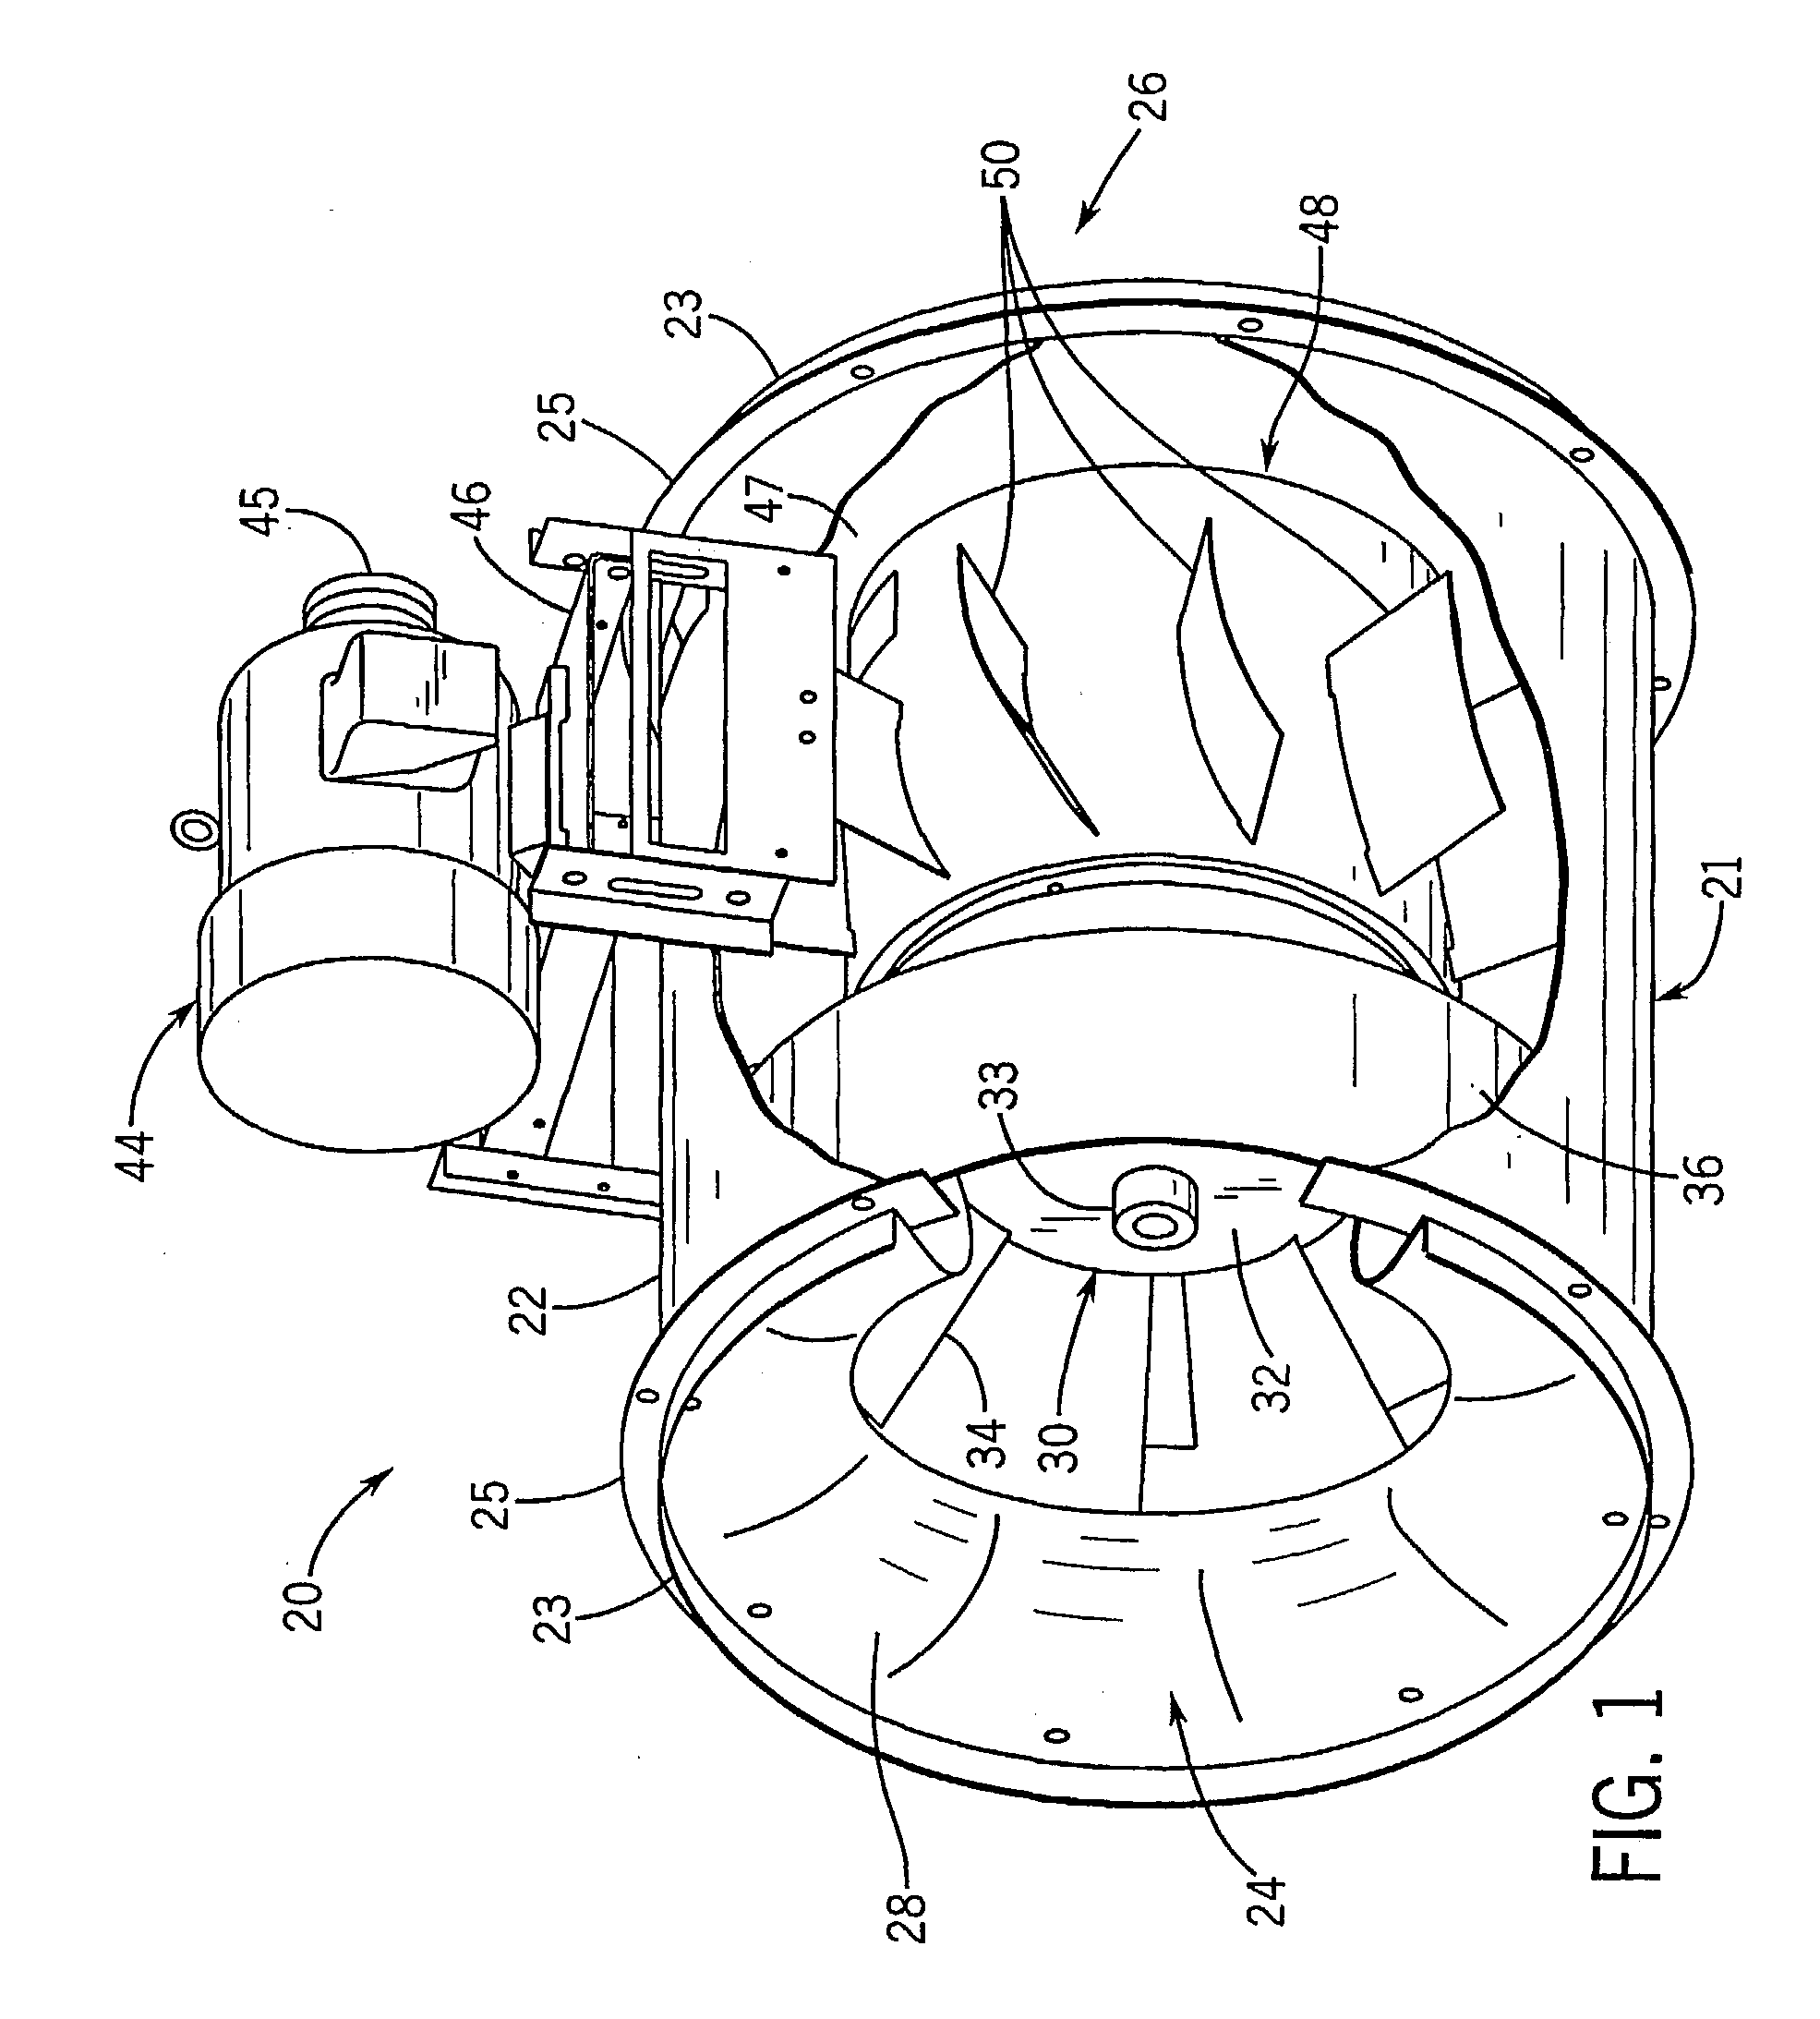 In-line centrifugal fan